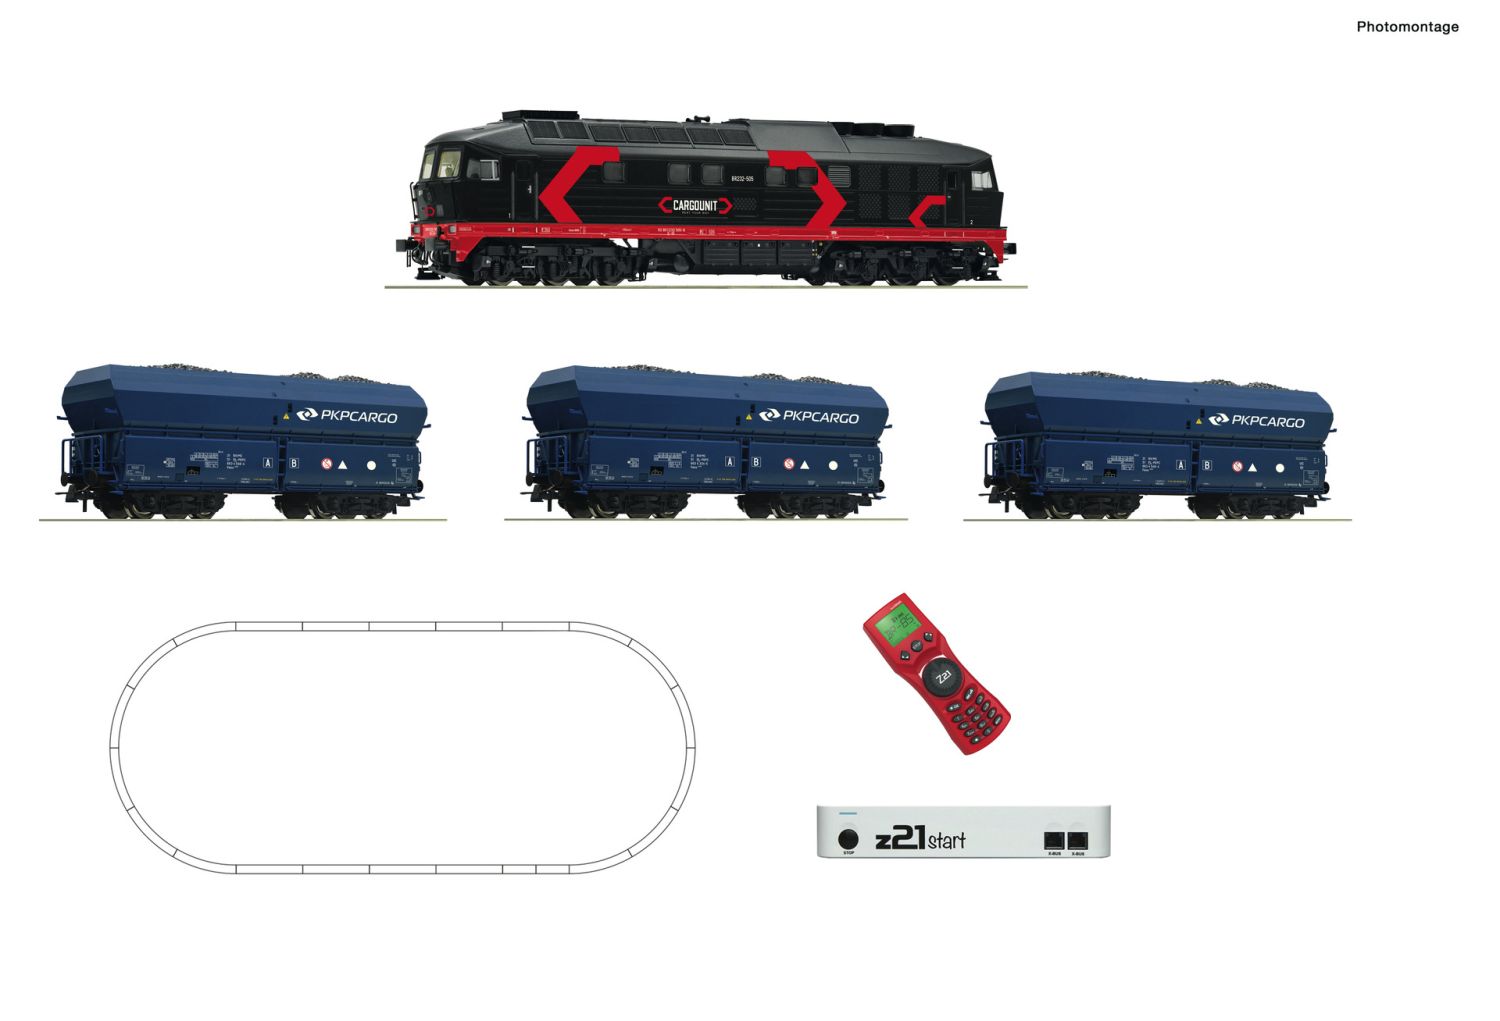 Roco 51342 - Digitales Startset mit BR 232 und Güterzug, PKP-Cargounit, Ep.VI, z21start und MultiMaus